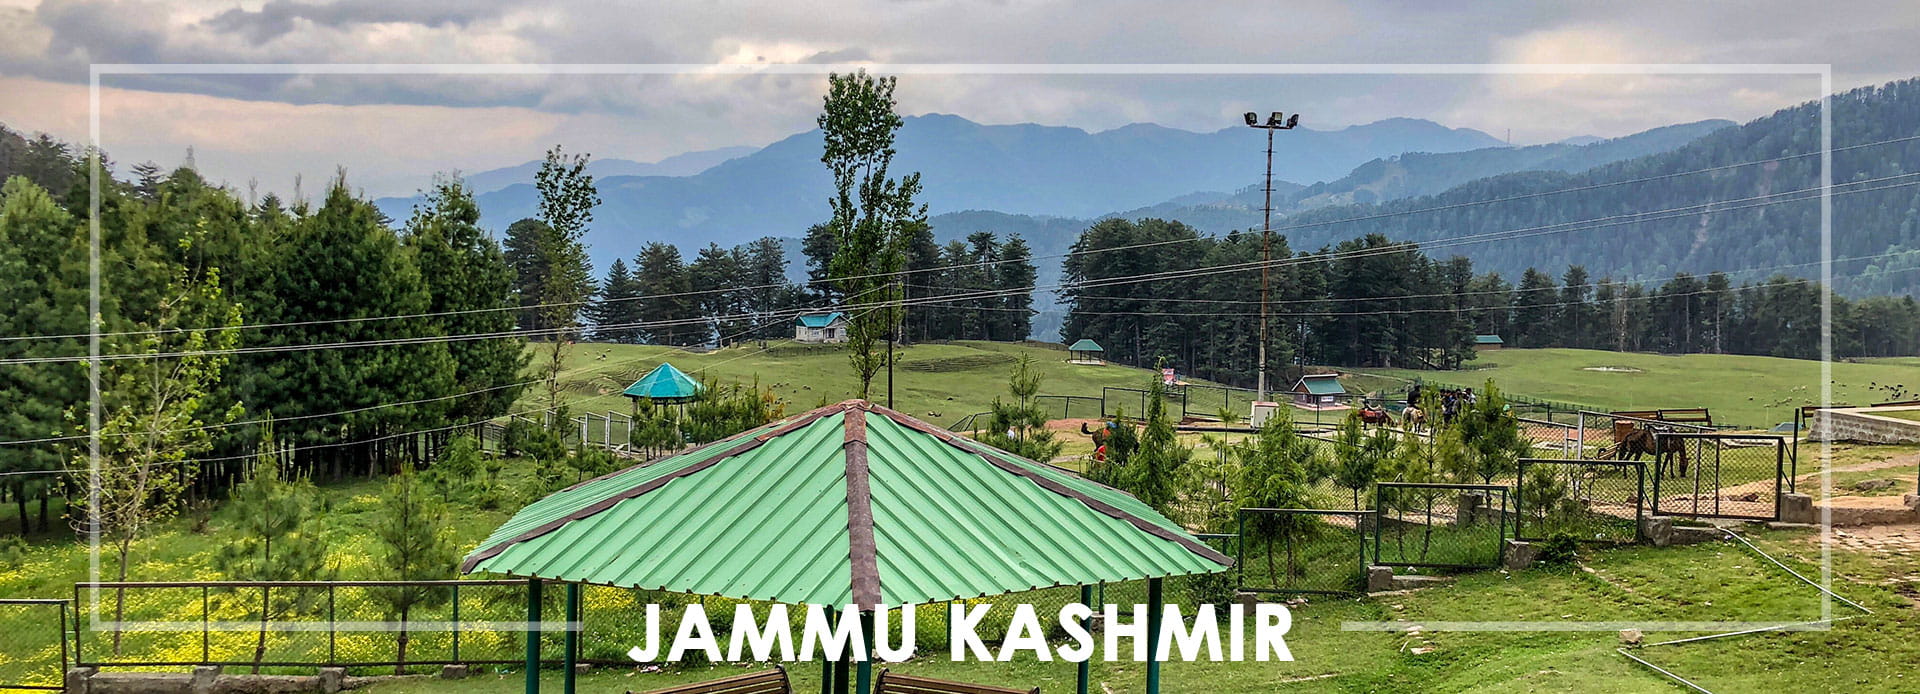  Jammu Kashmir